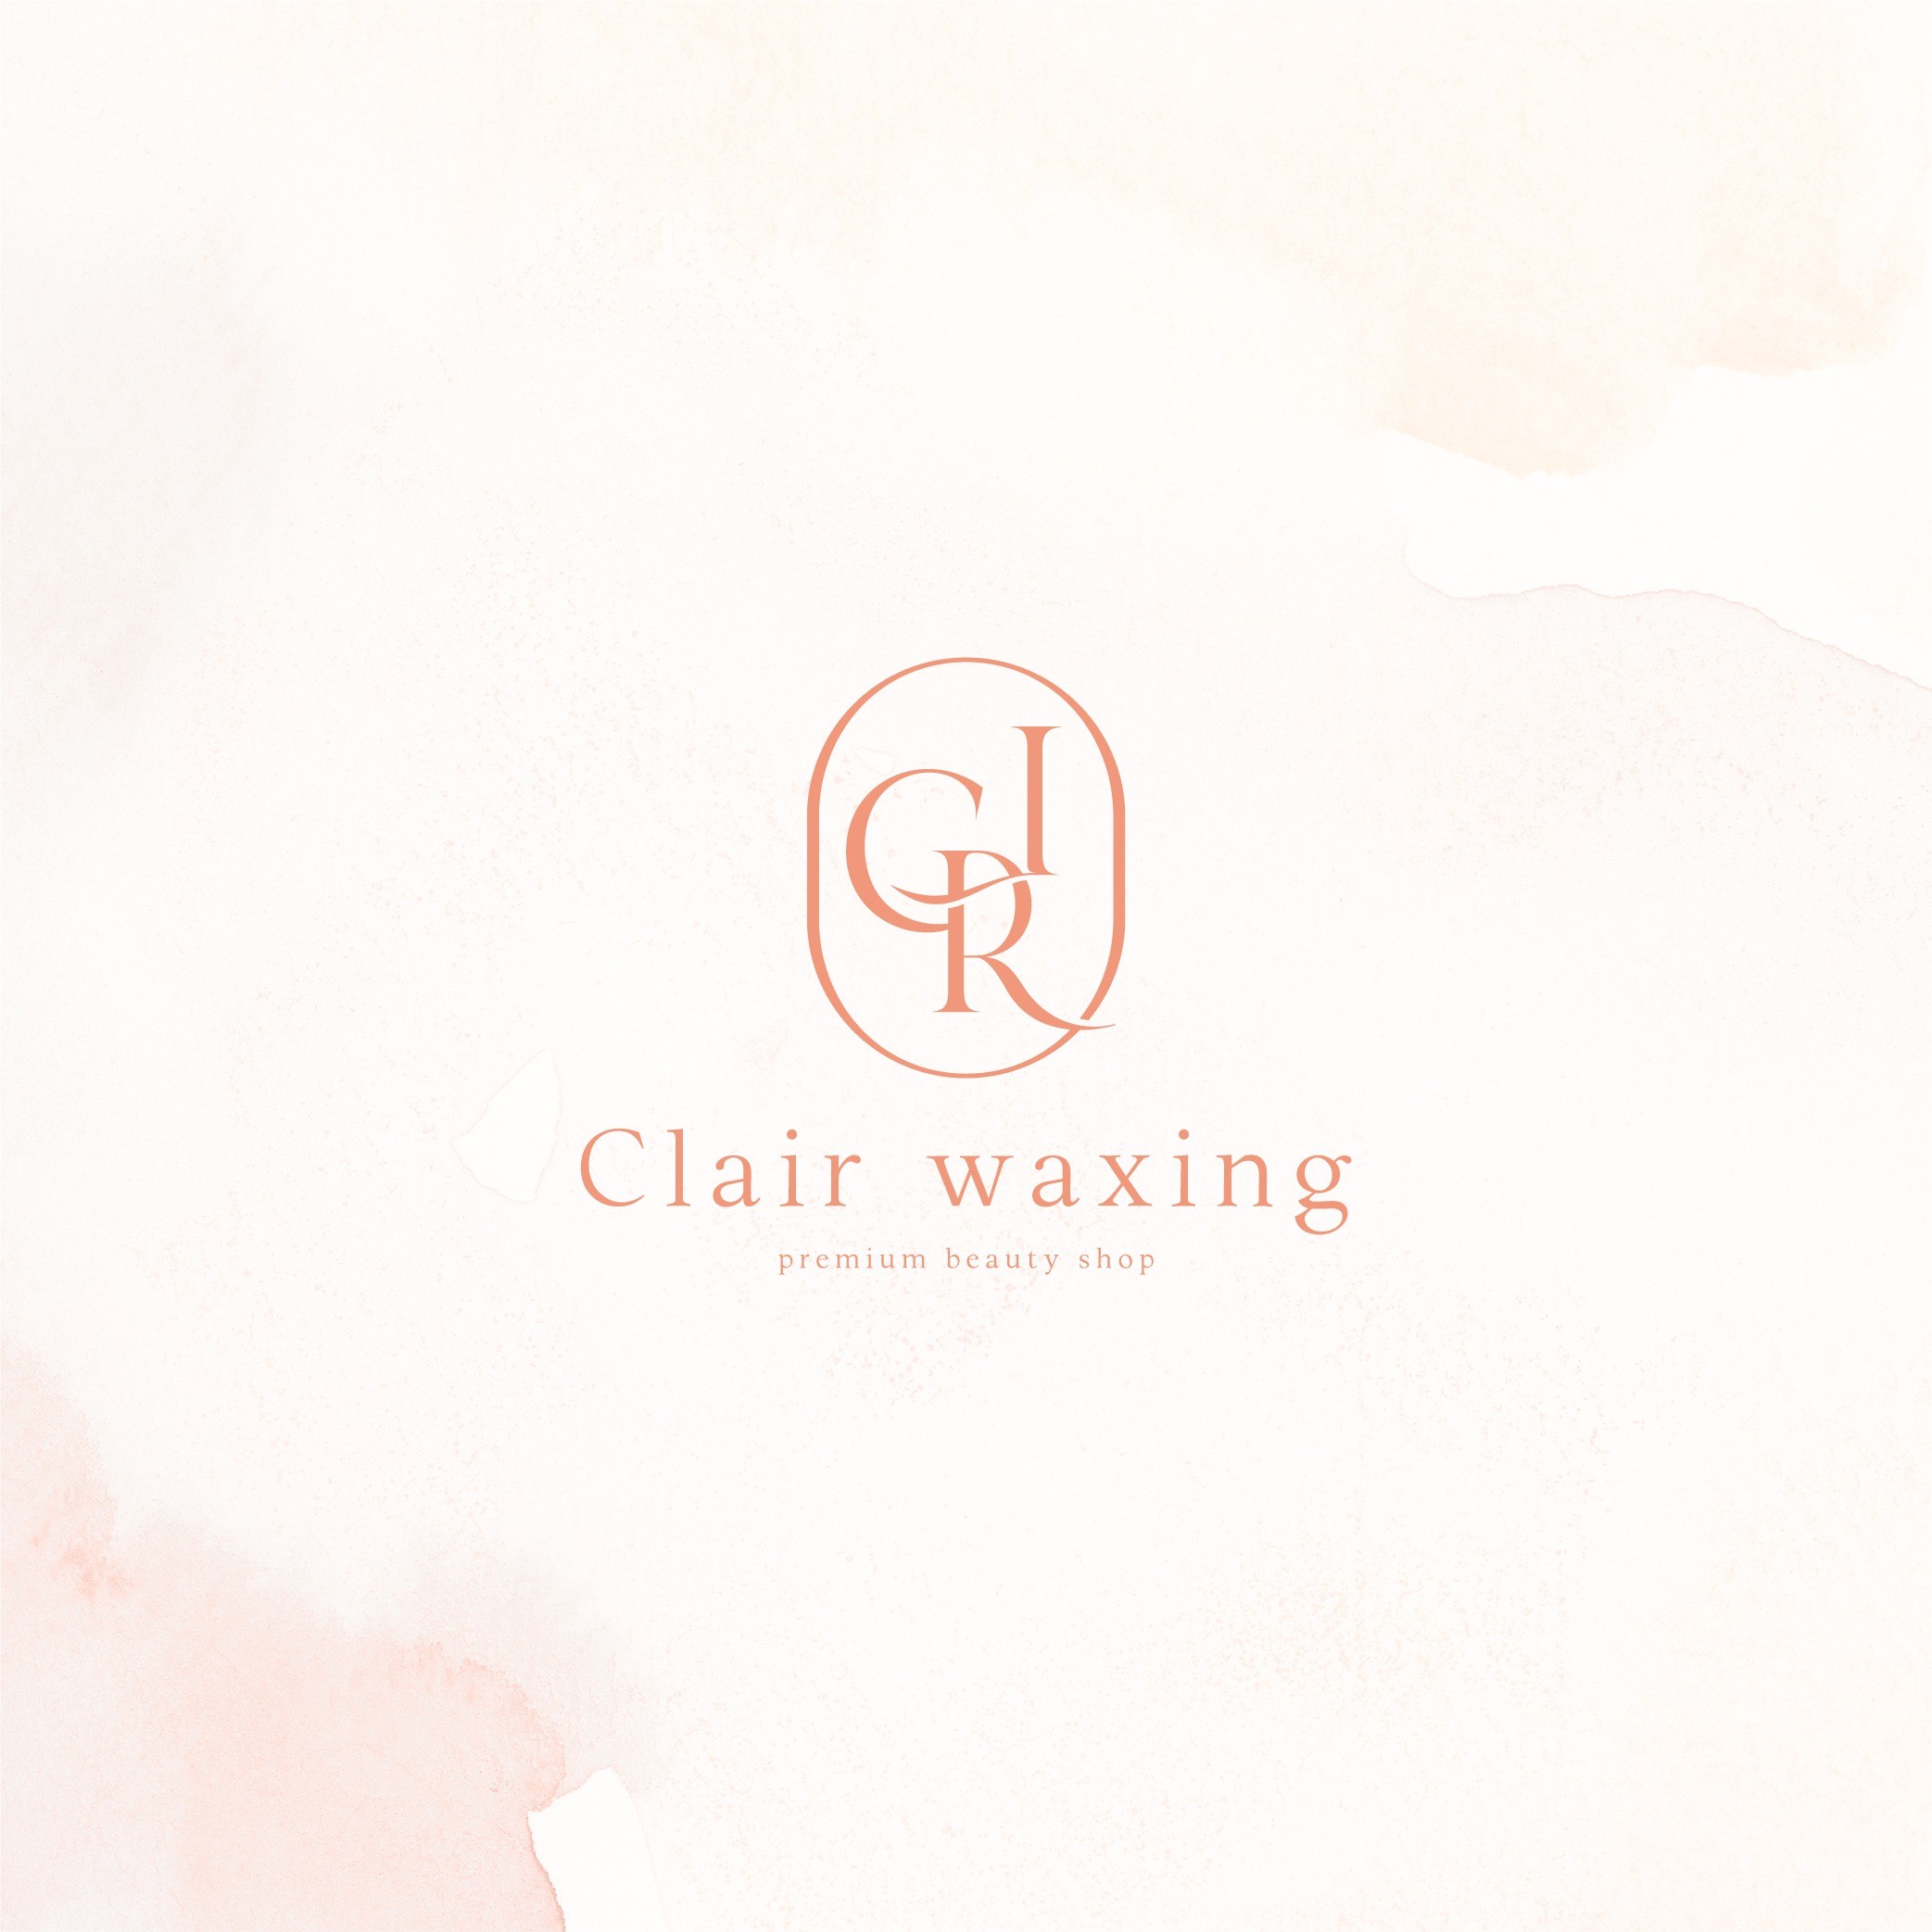 포트폴리오-프리미엄 왁싱샵 'Clair waxing' 로고 디자인